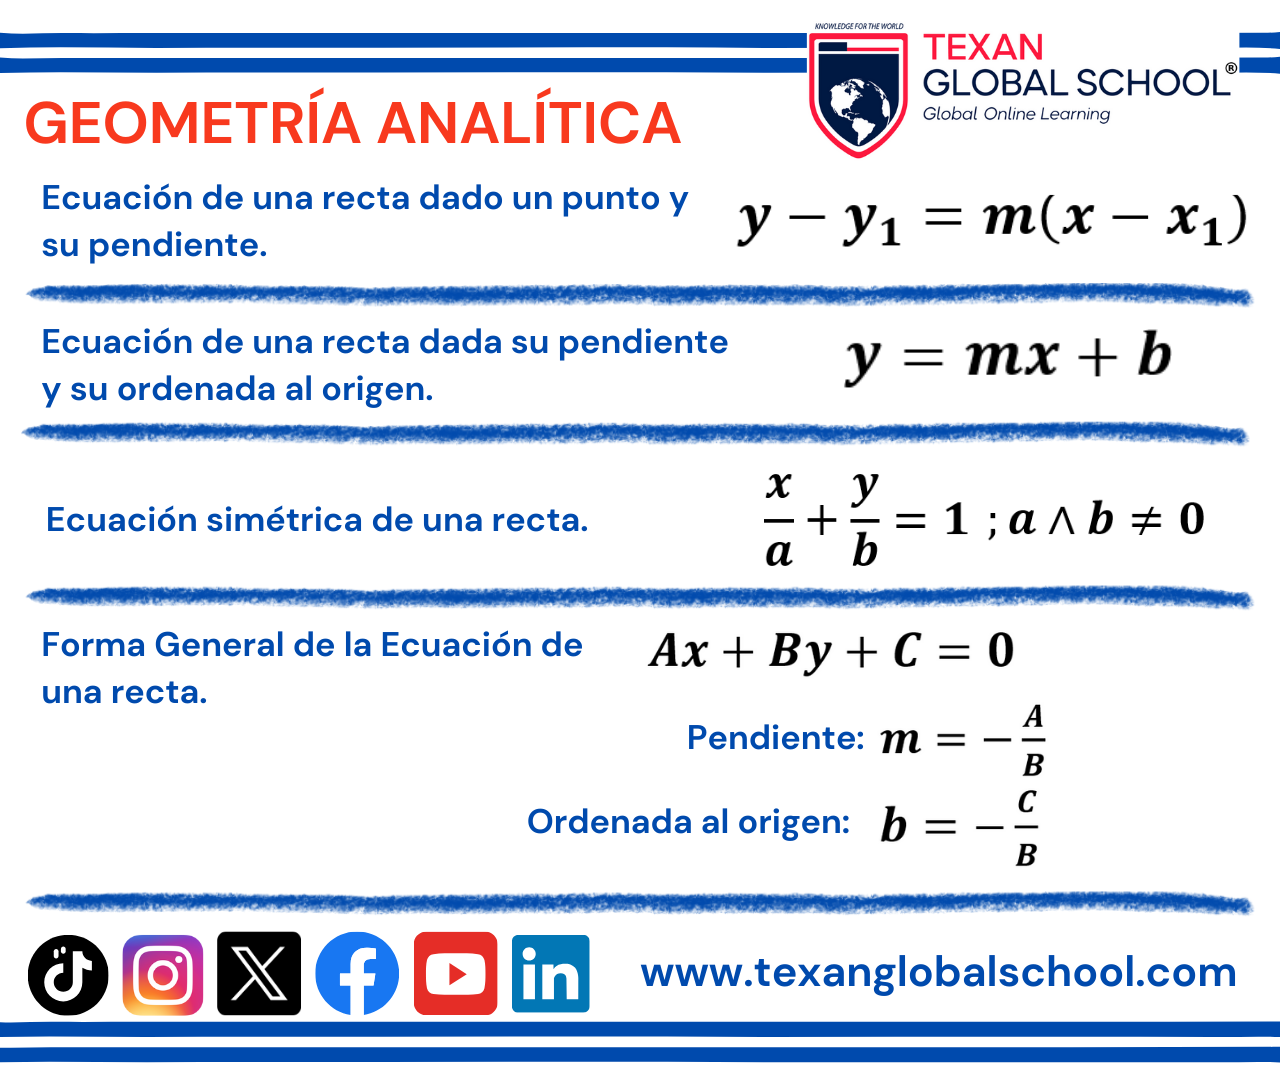 Formulario - Geometria Analitica 3